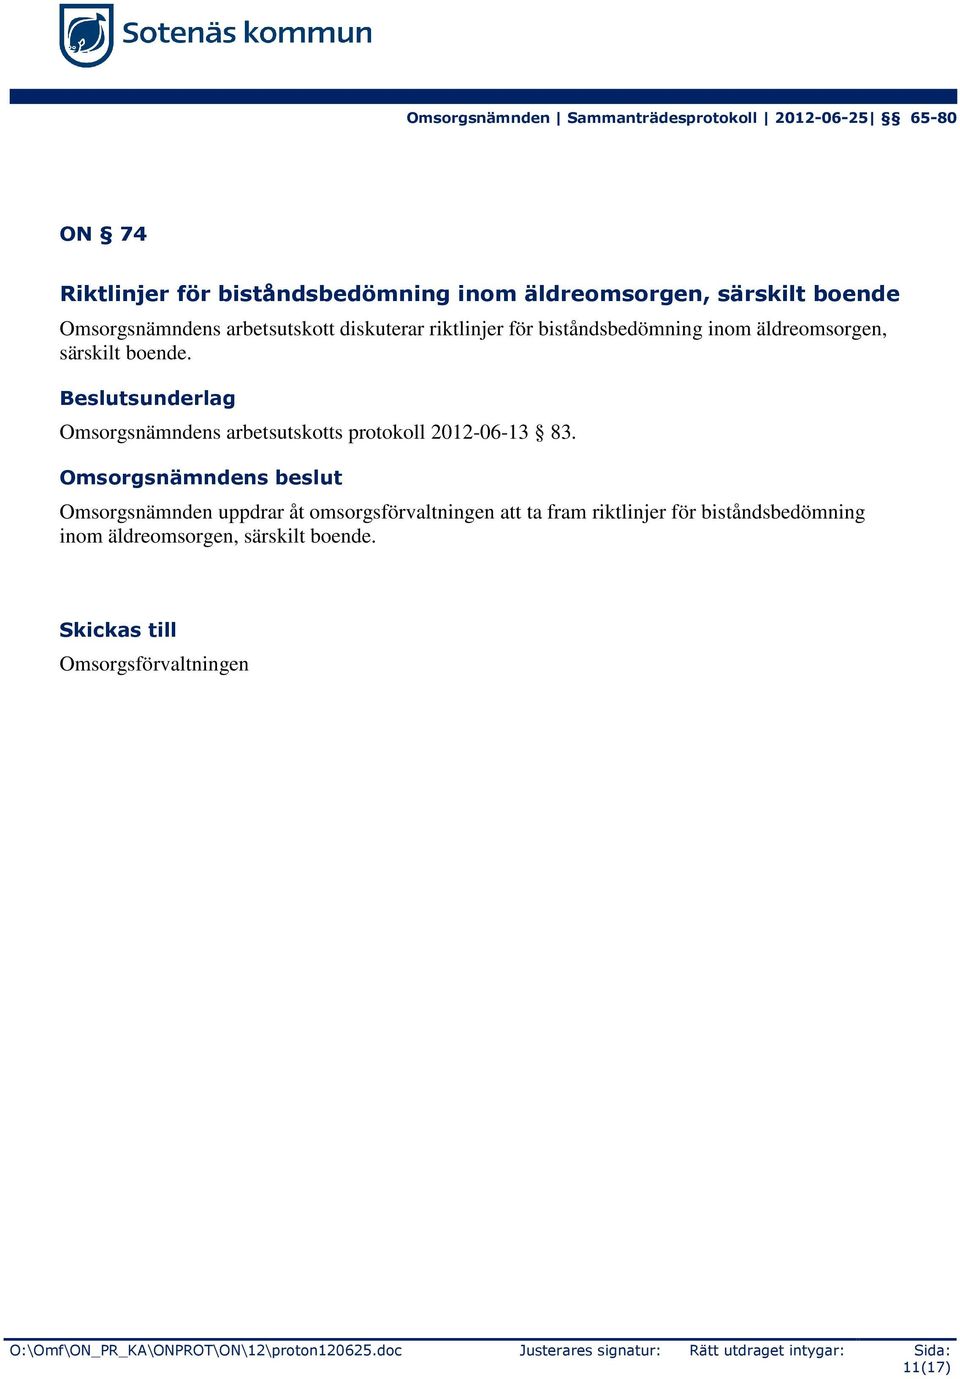 Omsorgsnämndens arbetsutskotts protokoll 2012-06-13 83.